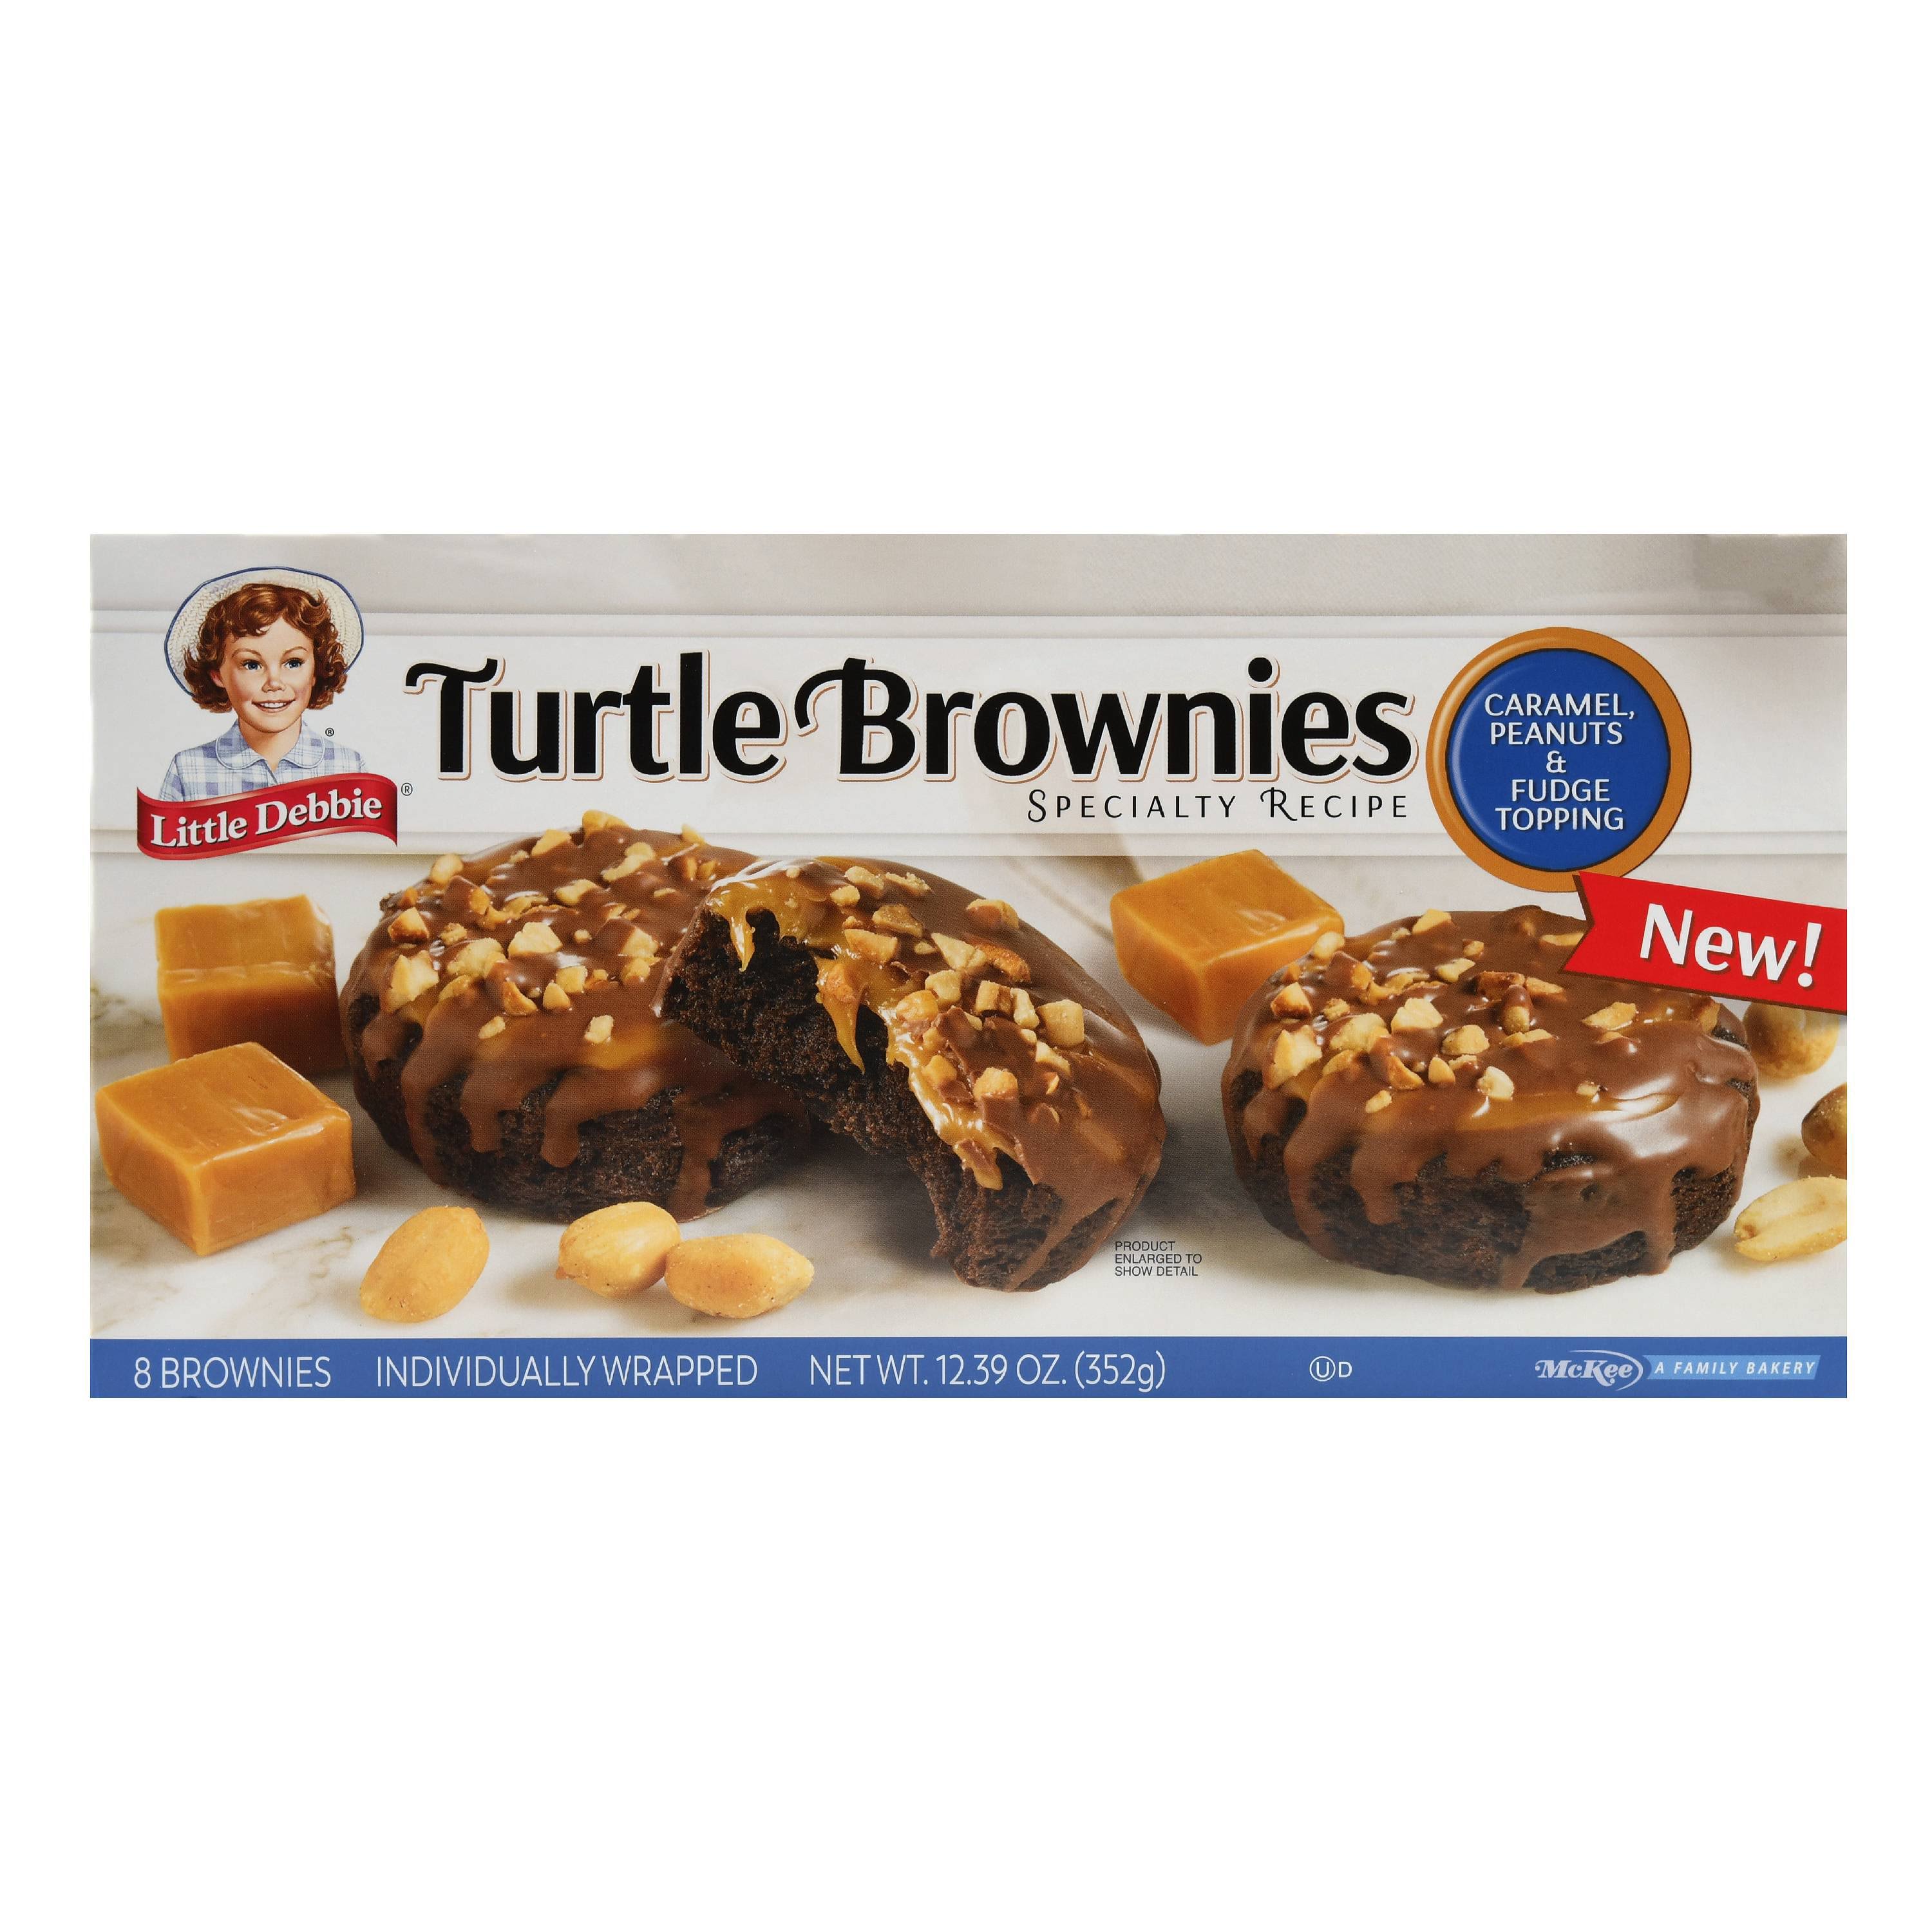 Little Debbie Turtle Brownies, Specialty Recipe, Caramel, Peanuts & Fudge Topping - 8 brownies, 12.68 oz